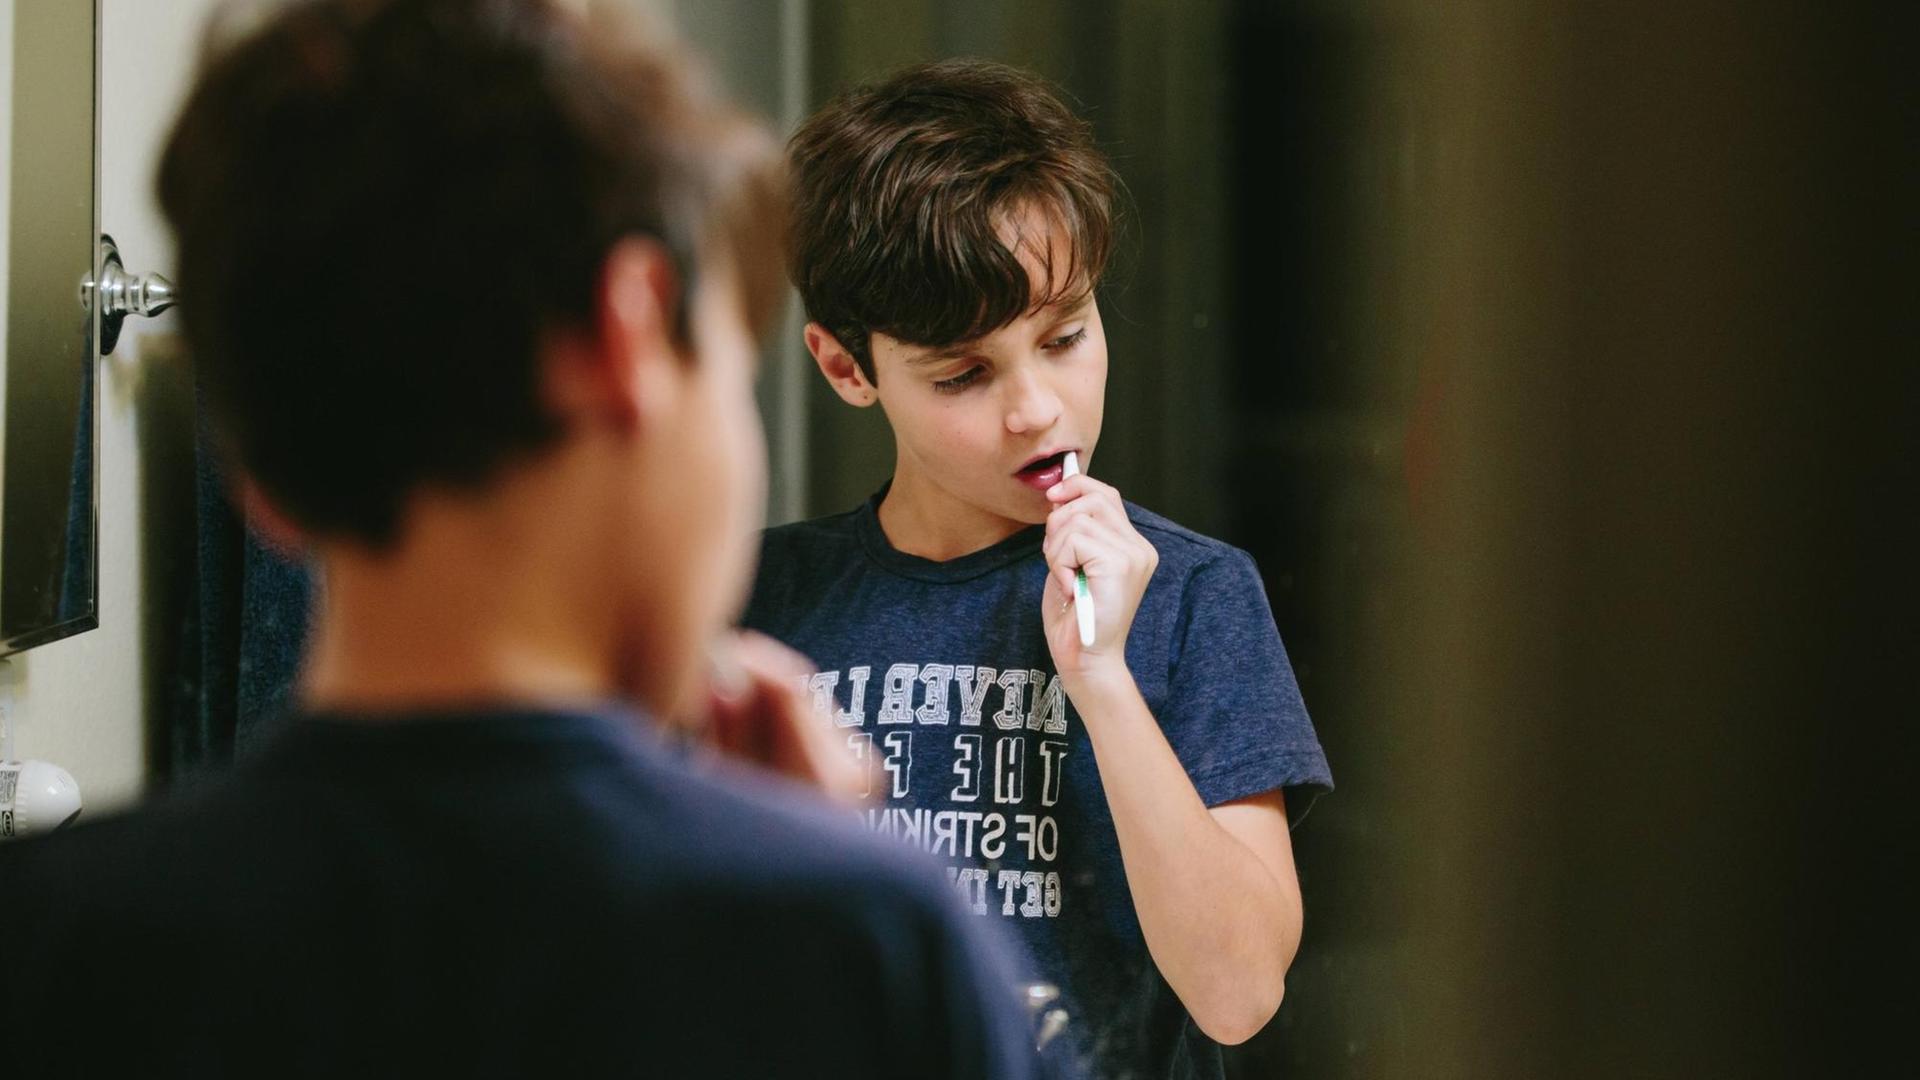 Ein Junge steht vor dem Spiegel und putzt sich die Zähne. Zu sehen sind sein Rücken und im Spiegel seine Reflexion.